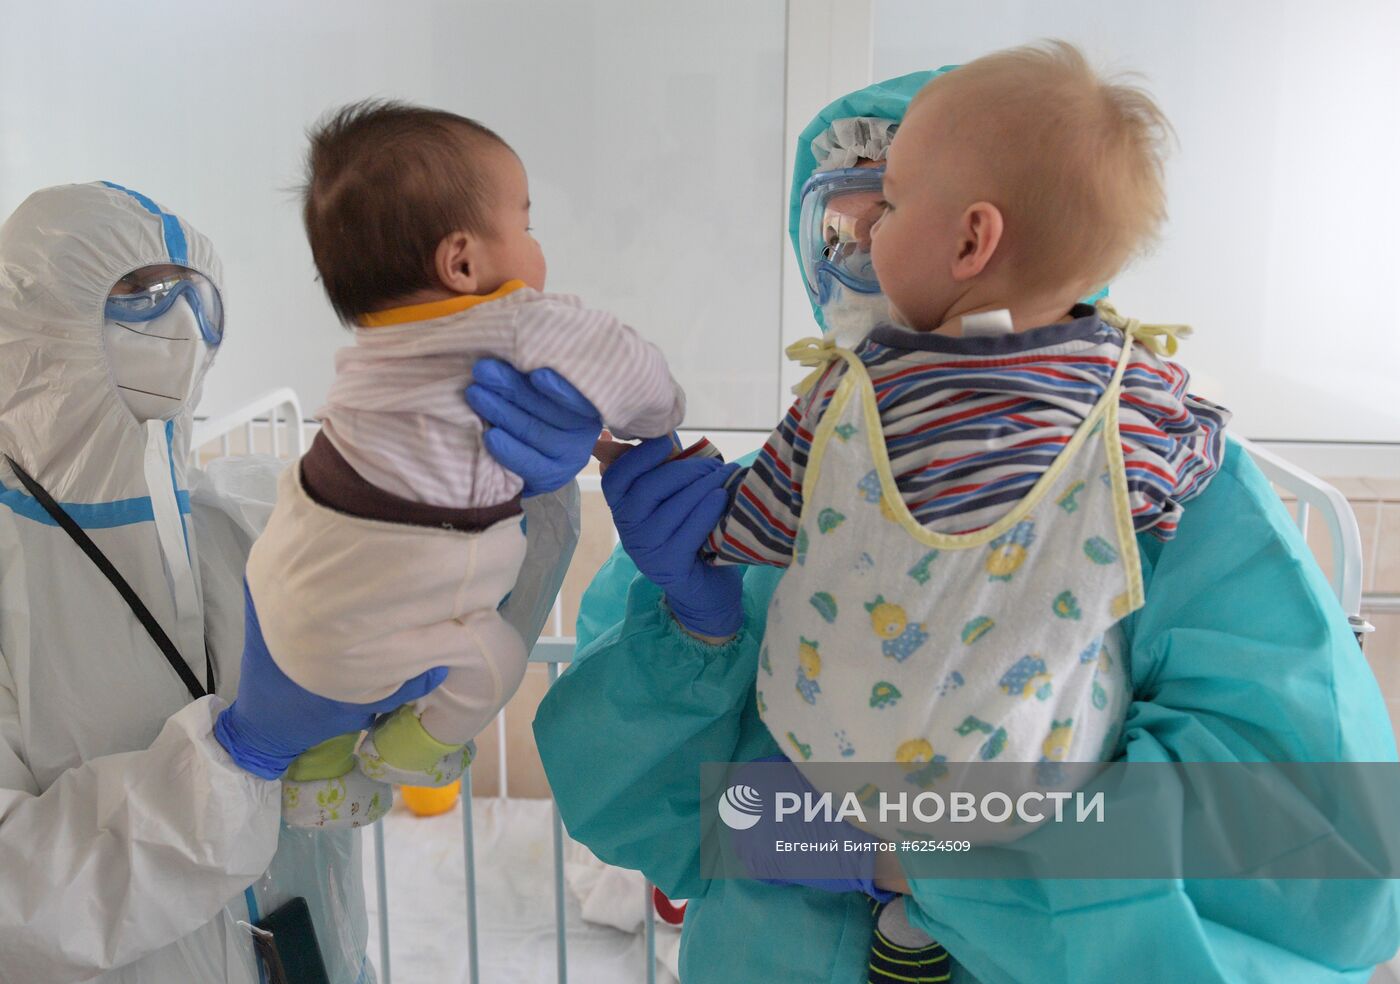 Лечение детей с COVID-19 в ГБУЗ "ДГКБ им. З.А. Башляевой"